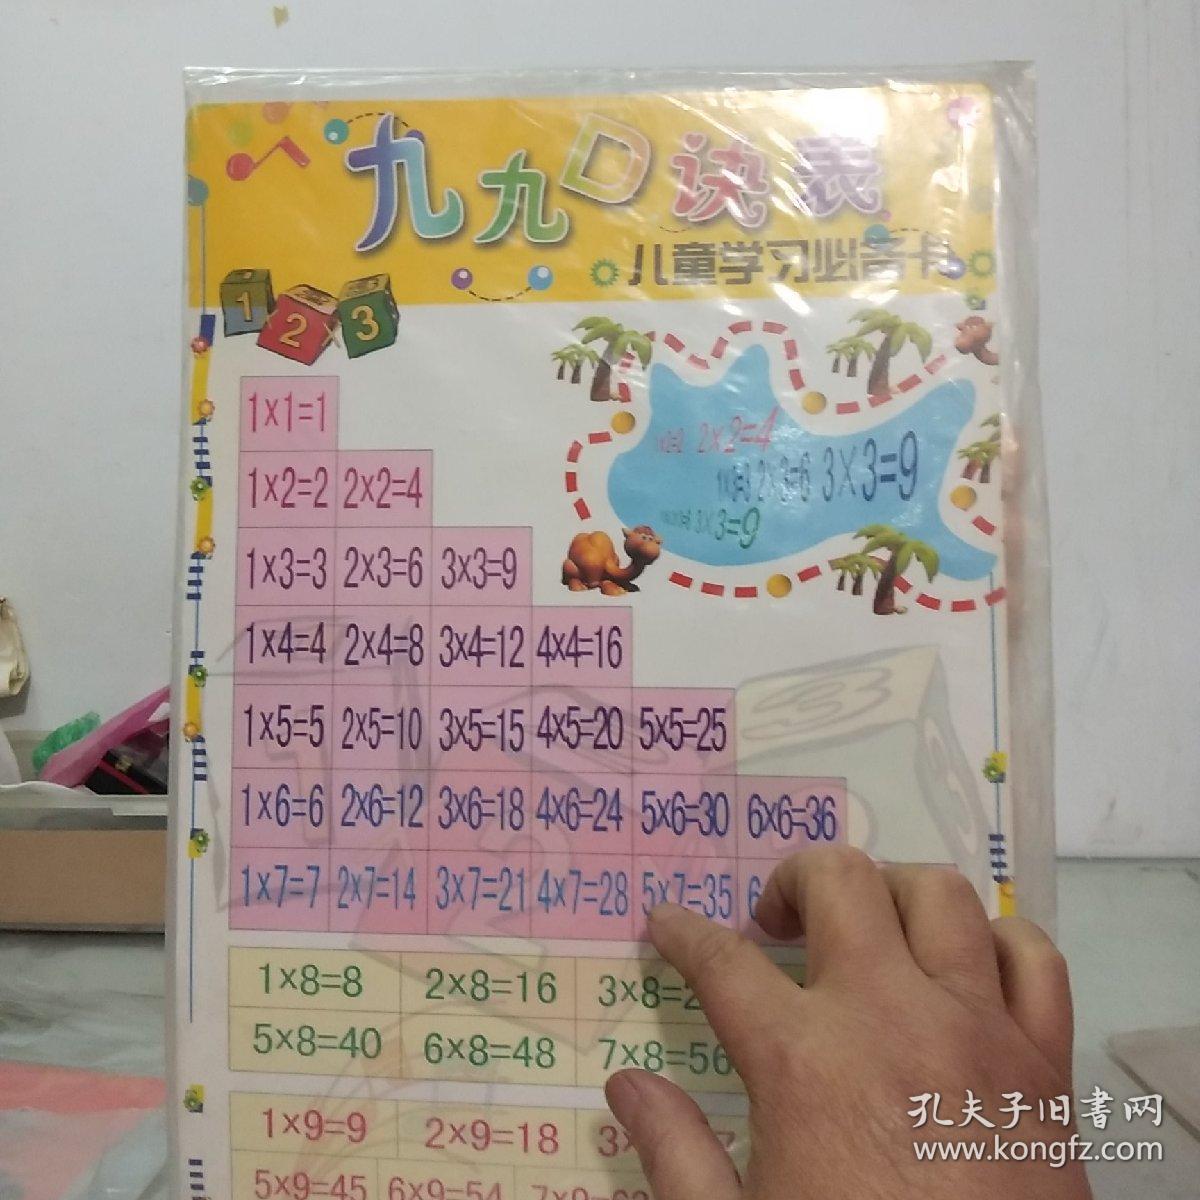 儿童学习必备卡六张 汉语拼音+汉字笔画名称写